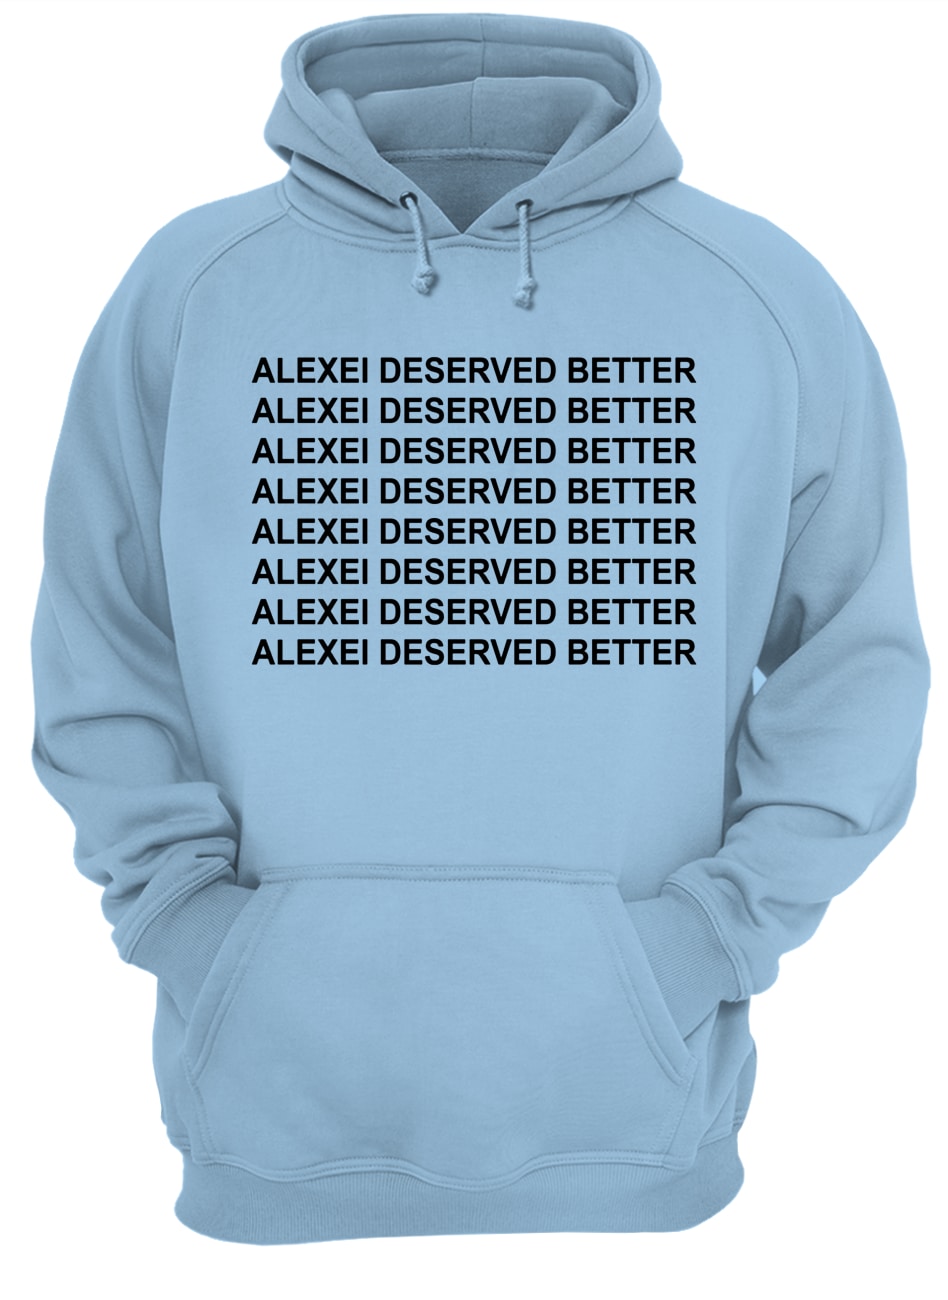 Alexei deserved better stranger things hoodie